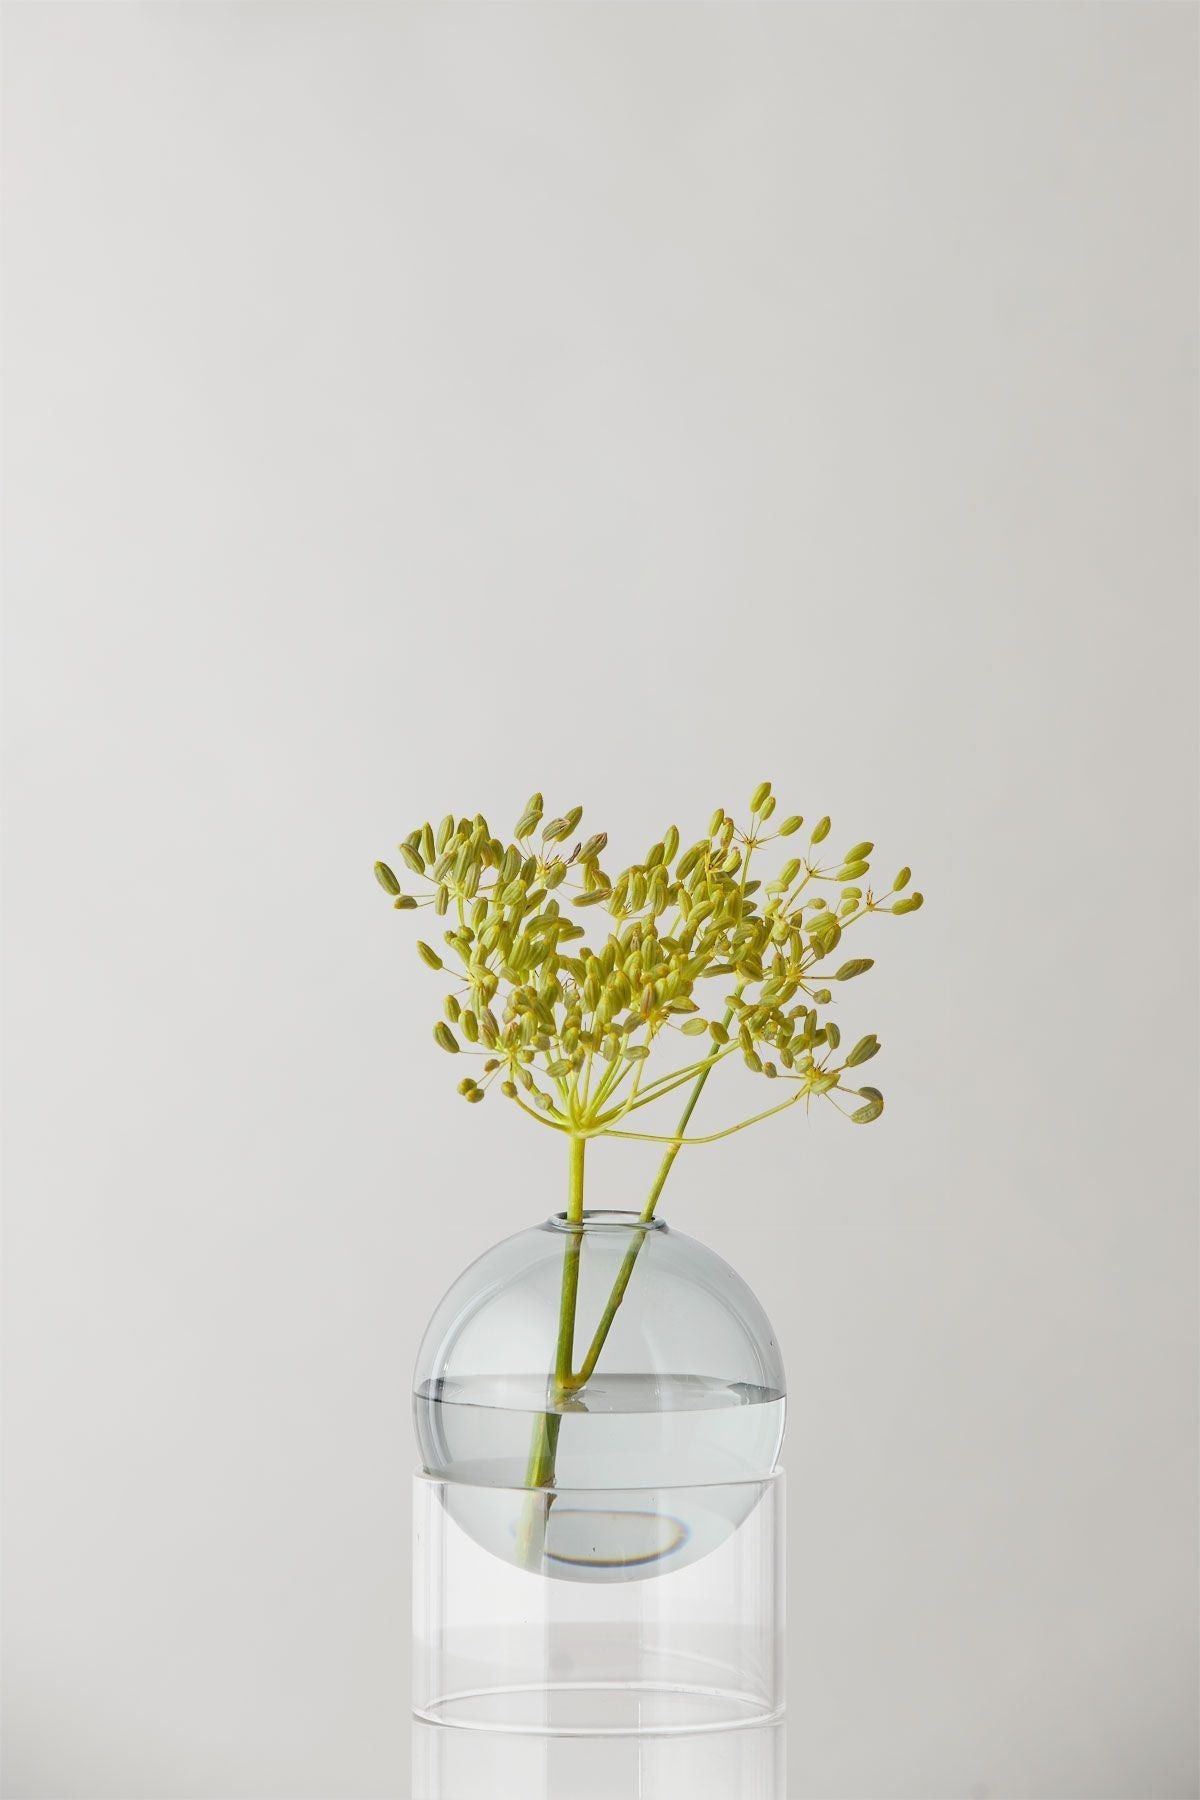 Studio sur le vase de bulles de fleur debout 10 cm, fumée